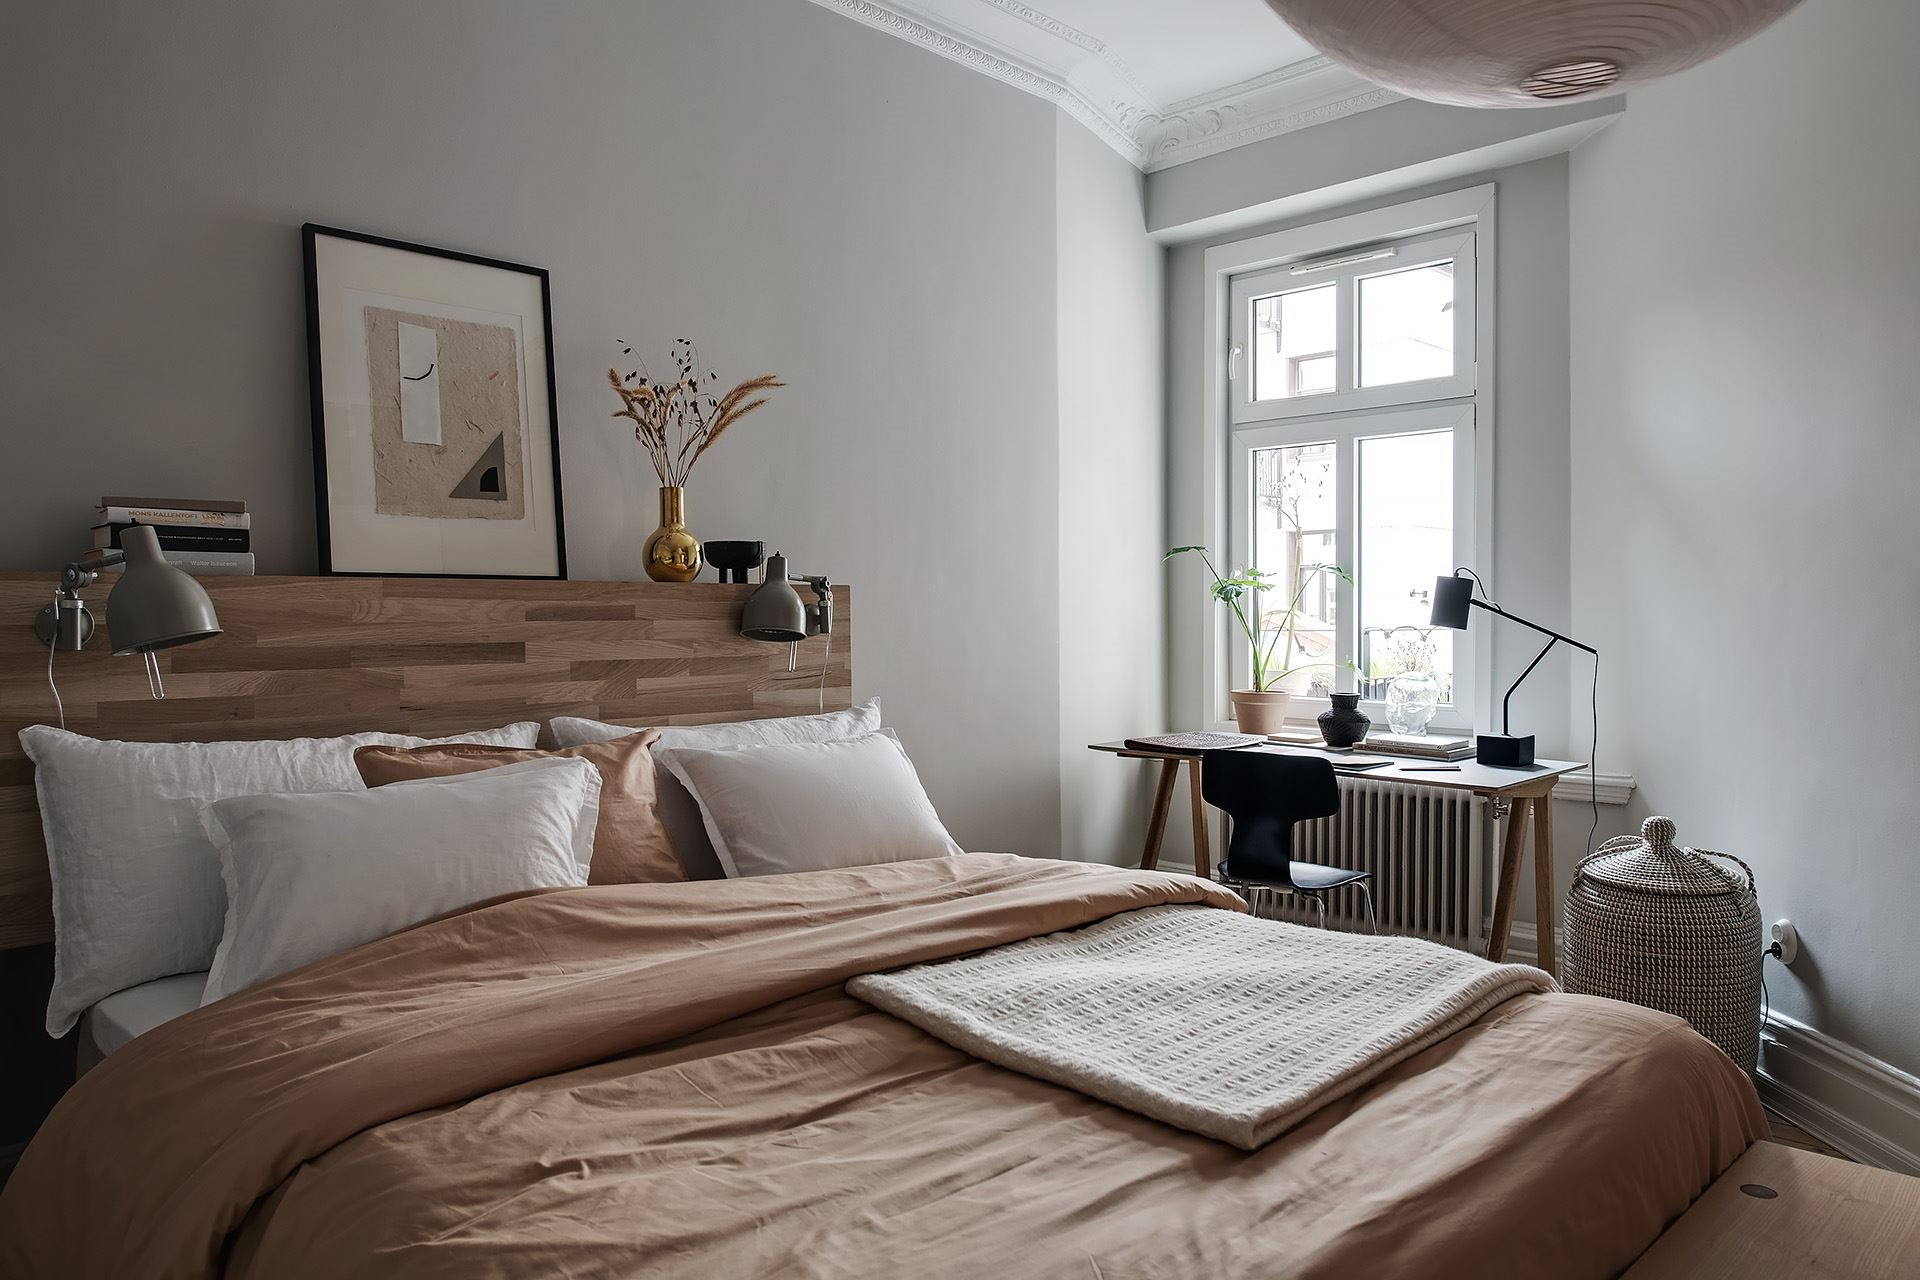 Piso con decoracion nordica moderna y paredes pintadas en color gris dormitorio con cama con cabecero de madera